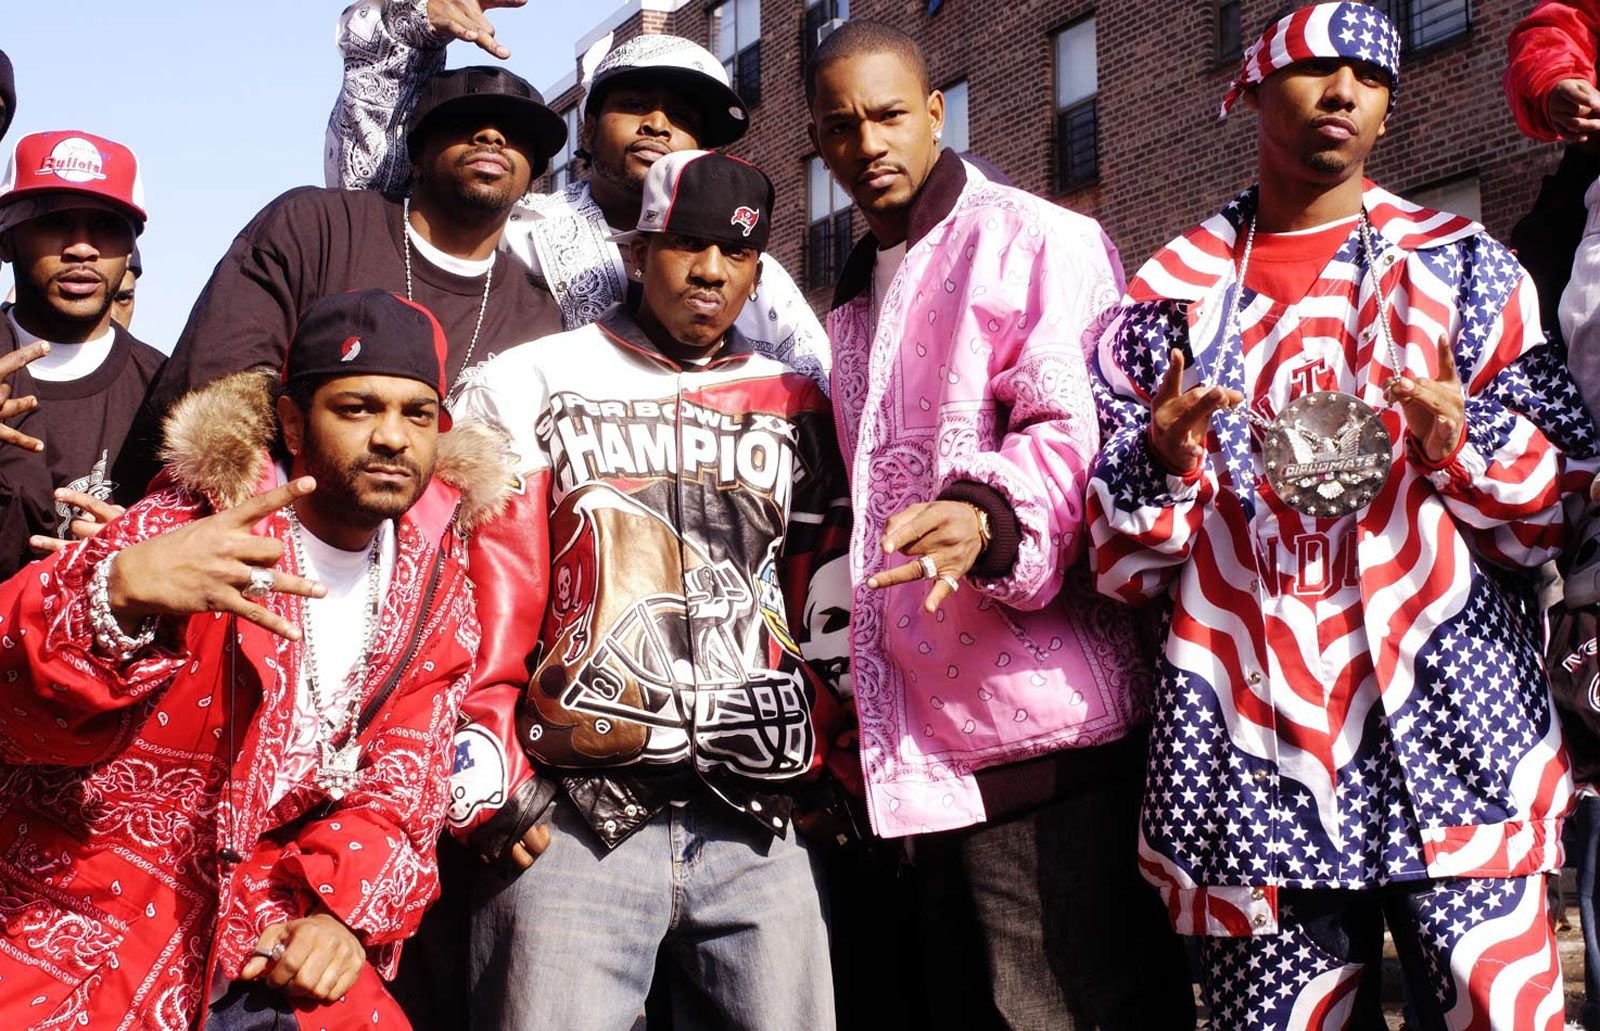 Рэп зарубежный 90х. РЭПЕРЫ субкультура 2000. Хип хоп стиль в Америке 90е. Хип хоп США 90е. Хип хоп культура одежда 2000 Америка.